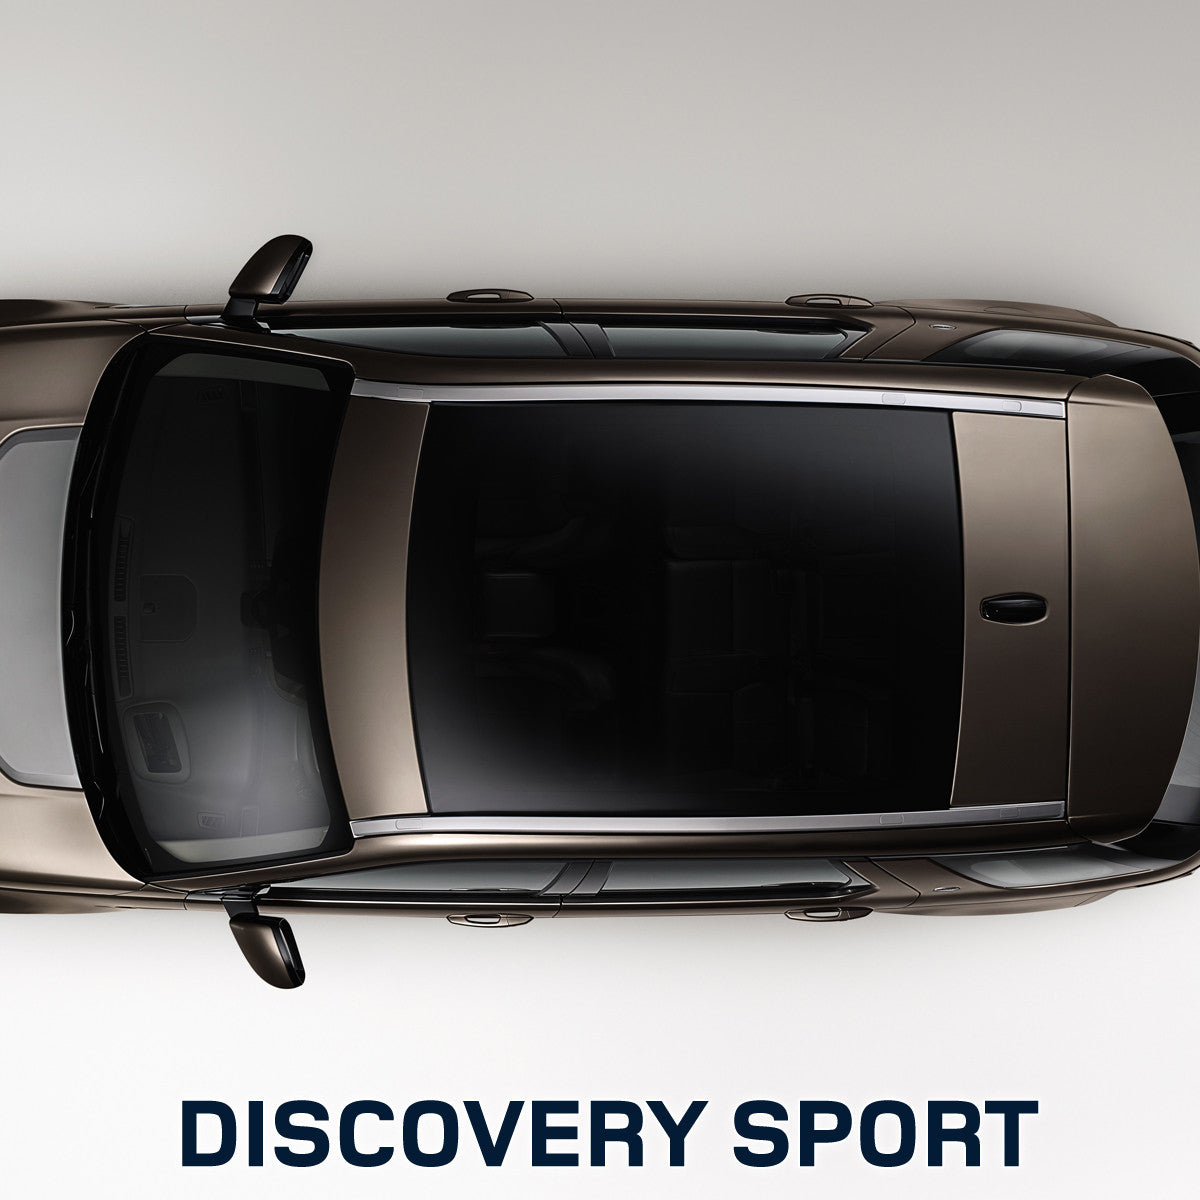 2 Stück Autodachträger Längsstange für Land Rover Discovery Sport 2015  2016-2022, Aluminium Dachreling Dachträger Gepäckträger GepäCktransport